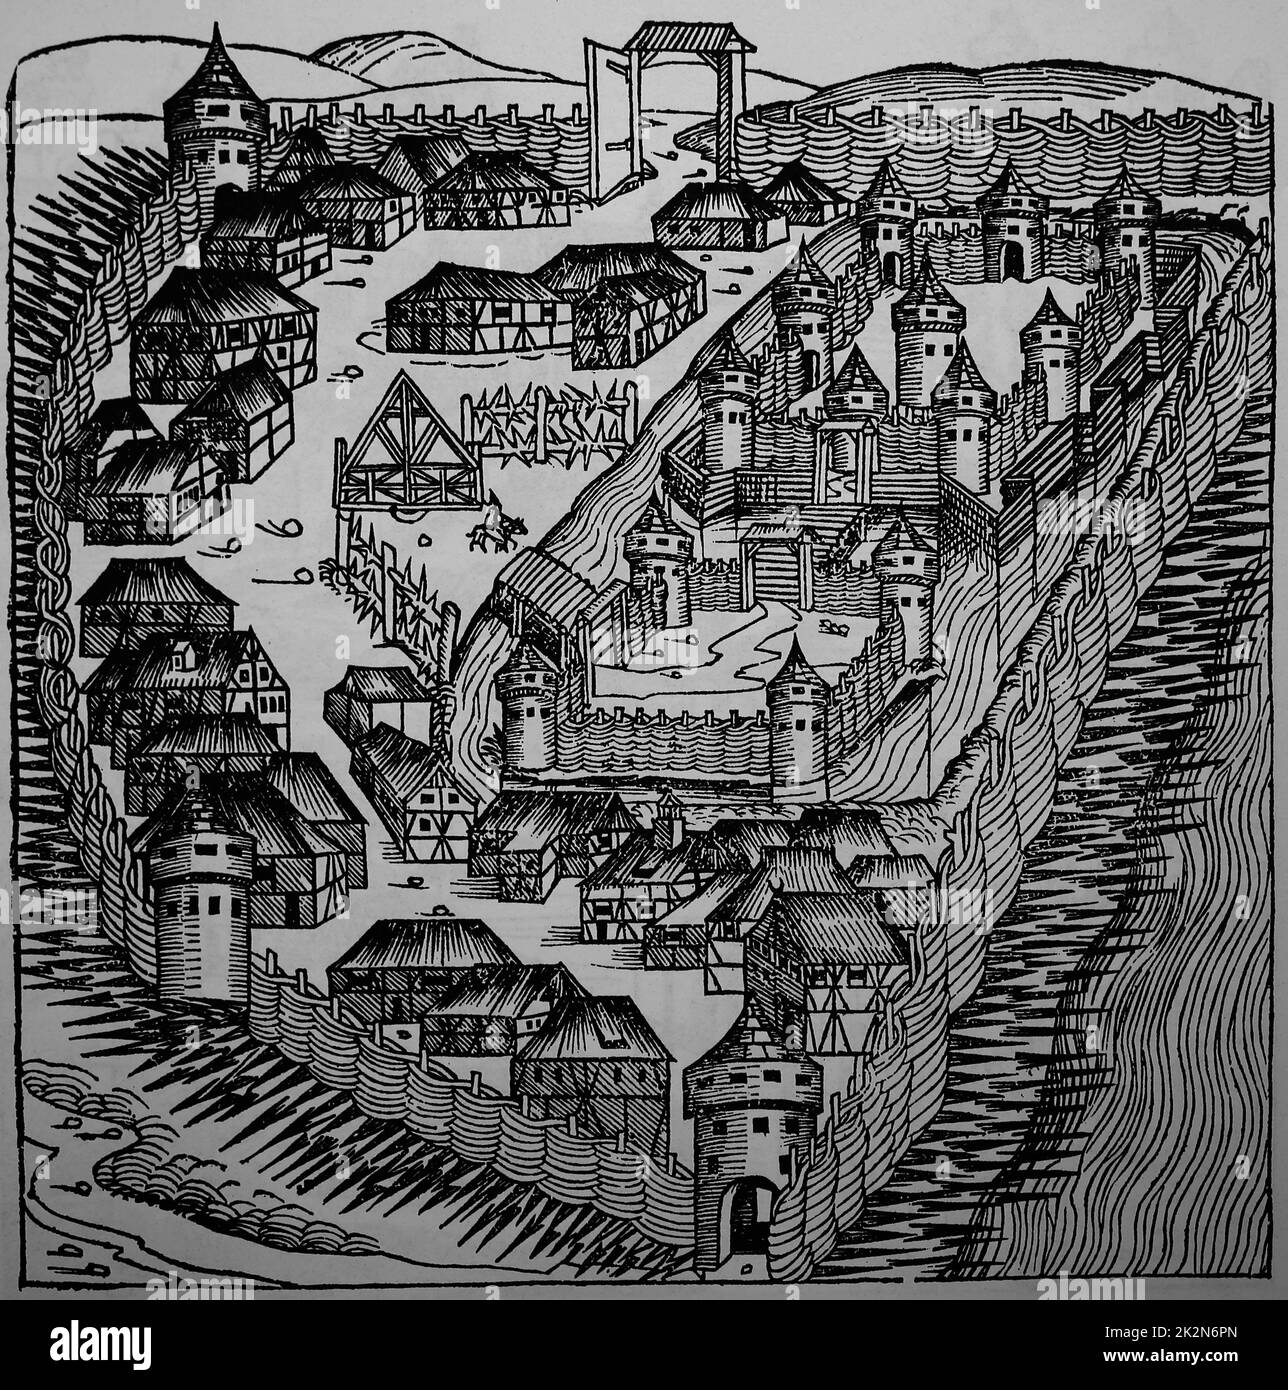 Sabatz (altes Zaslon). Die türkische Festung. Stich der Nürnberger Chronik, 15.. Jahrhundert. Stockfoto